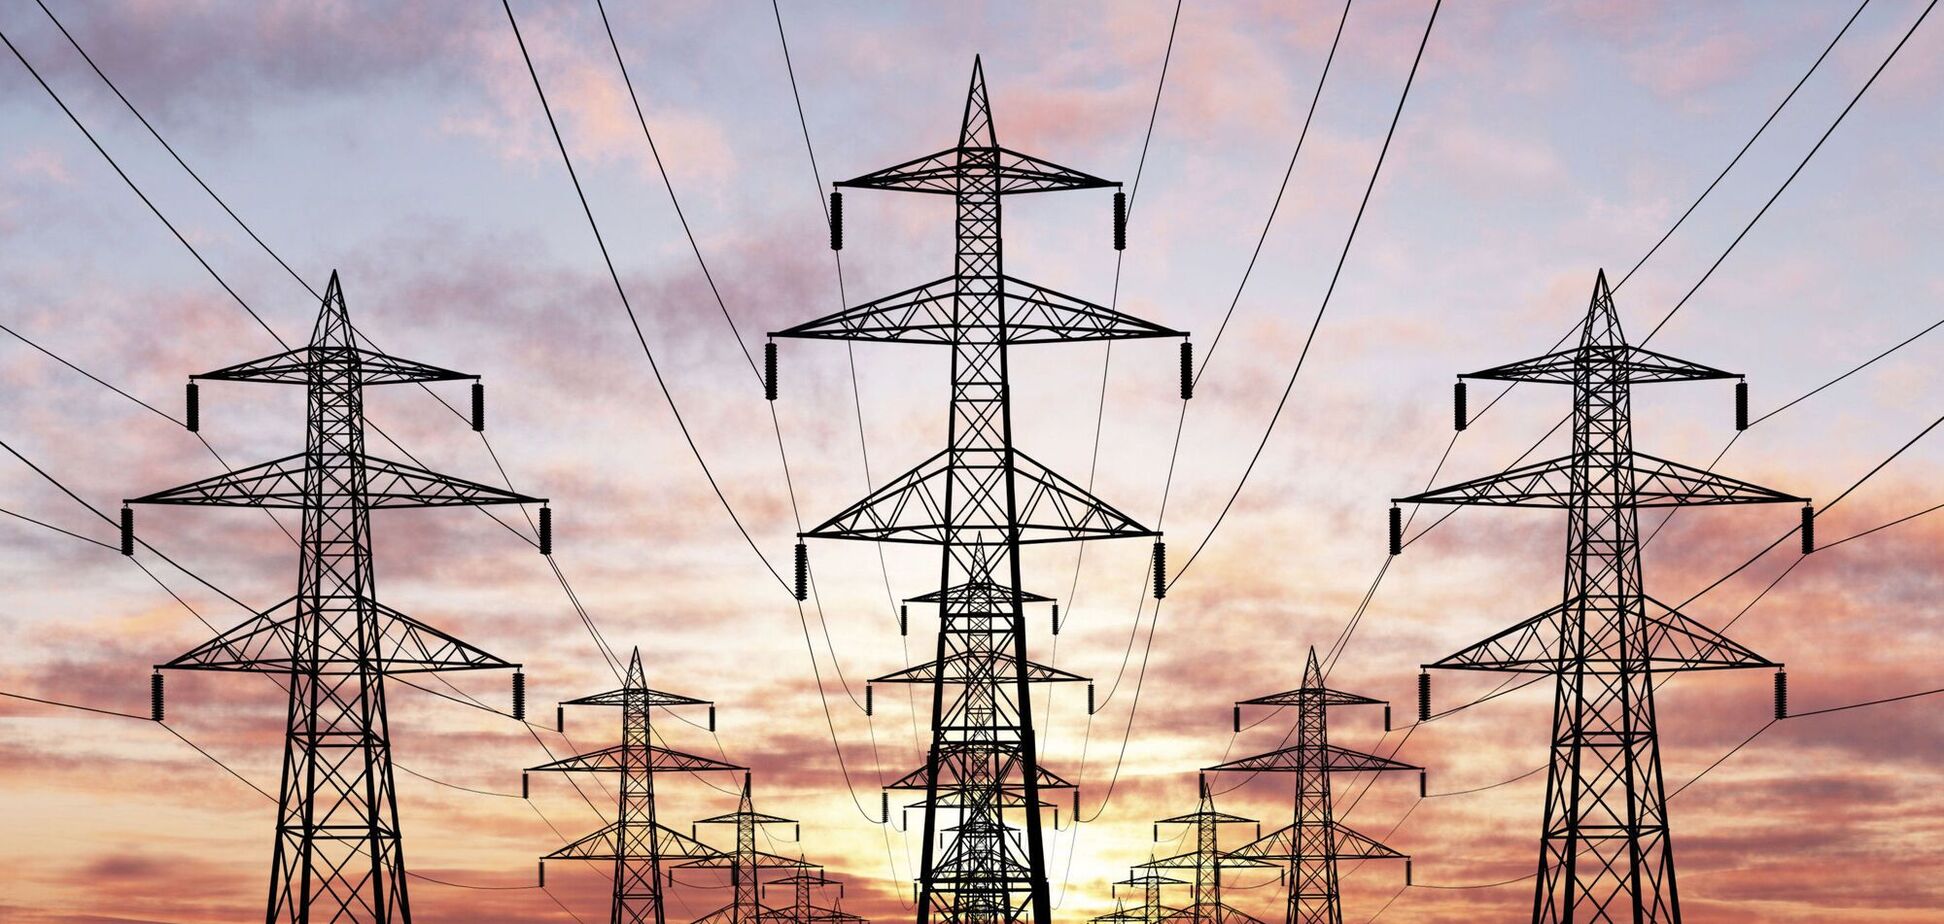 Нагрузка на потребителей электроэнергии уменьшилась, благодаря сокращению 'зеленых' тарифов